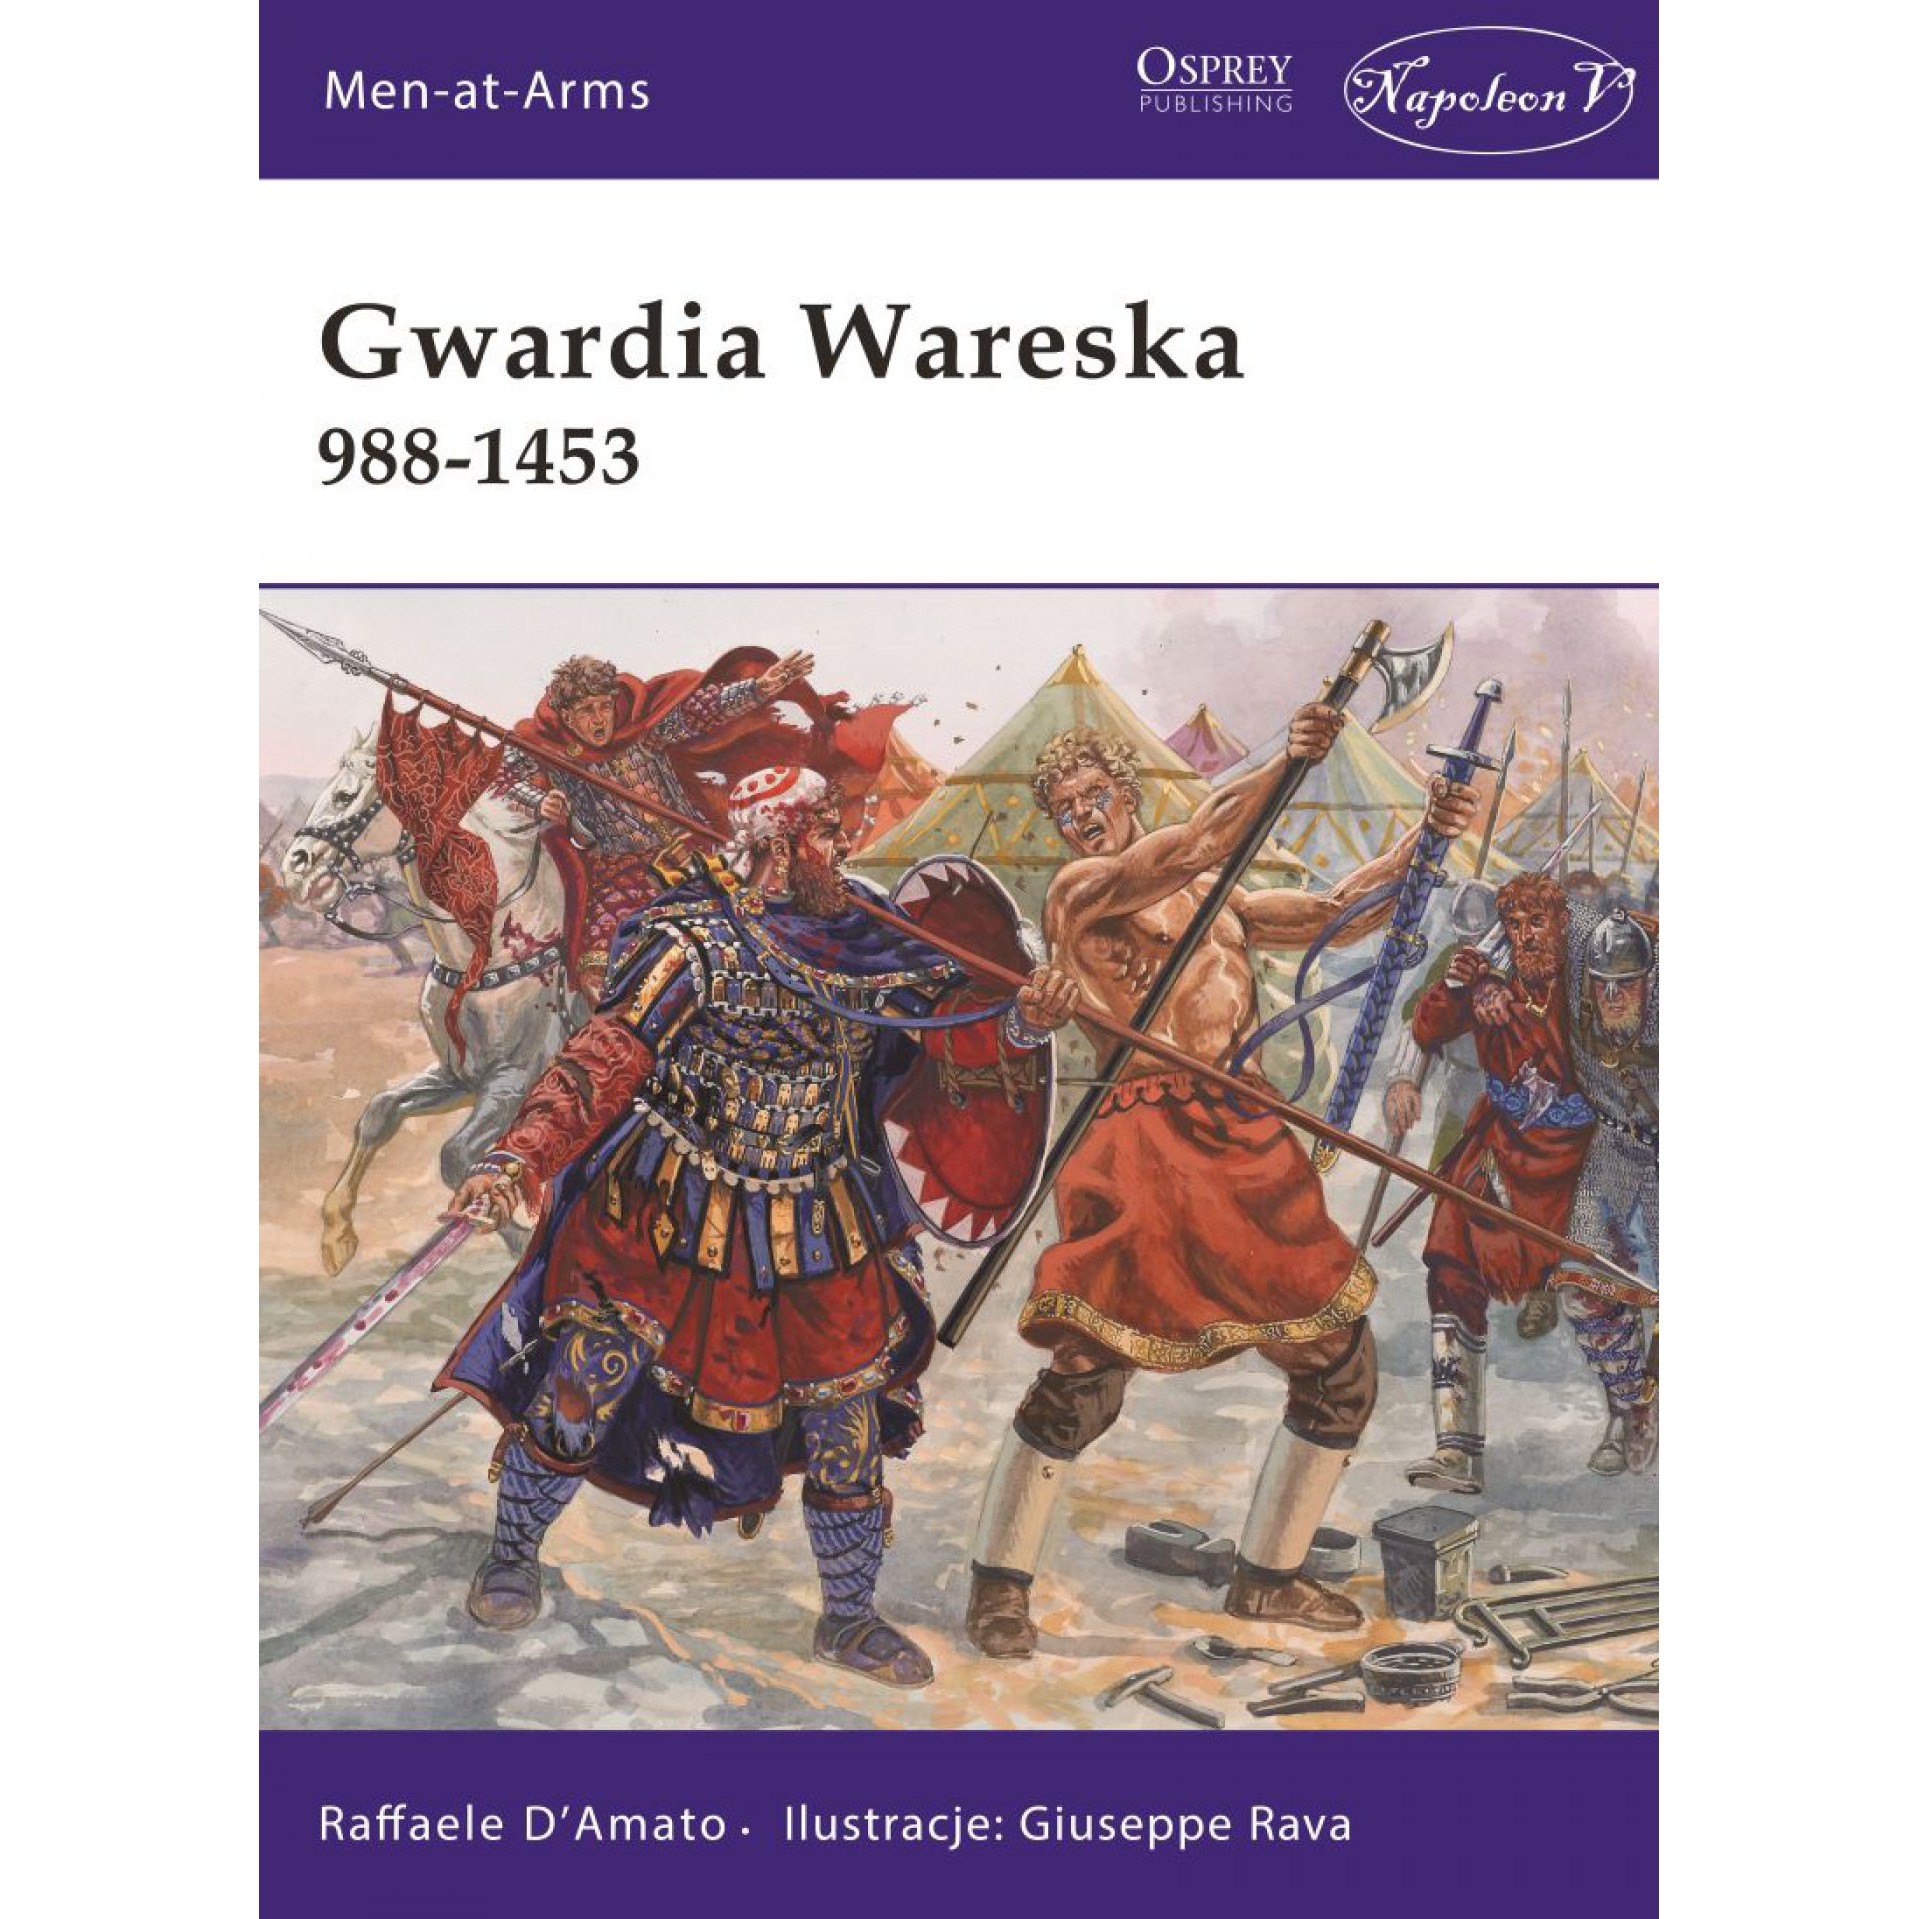 Gwardia wareska 988-1453